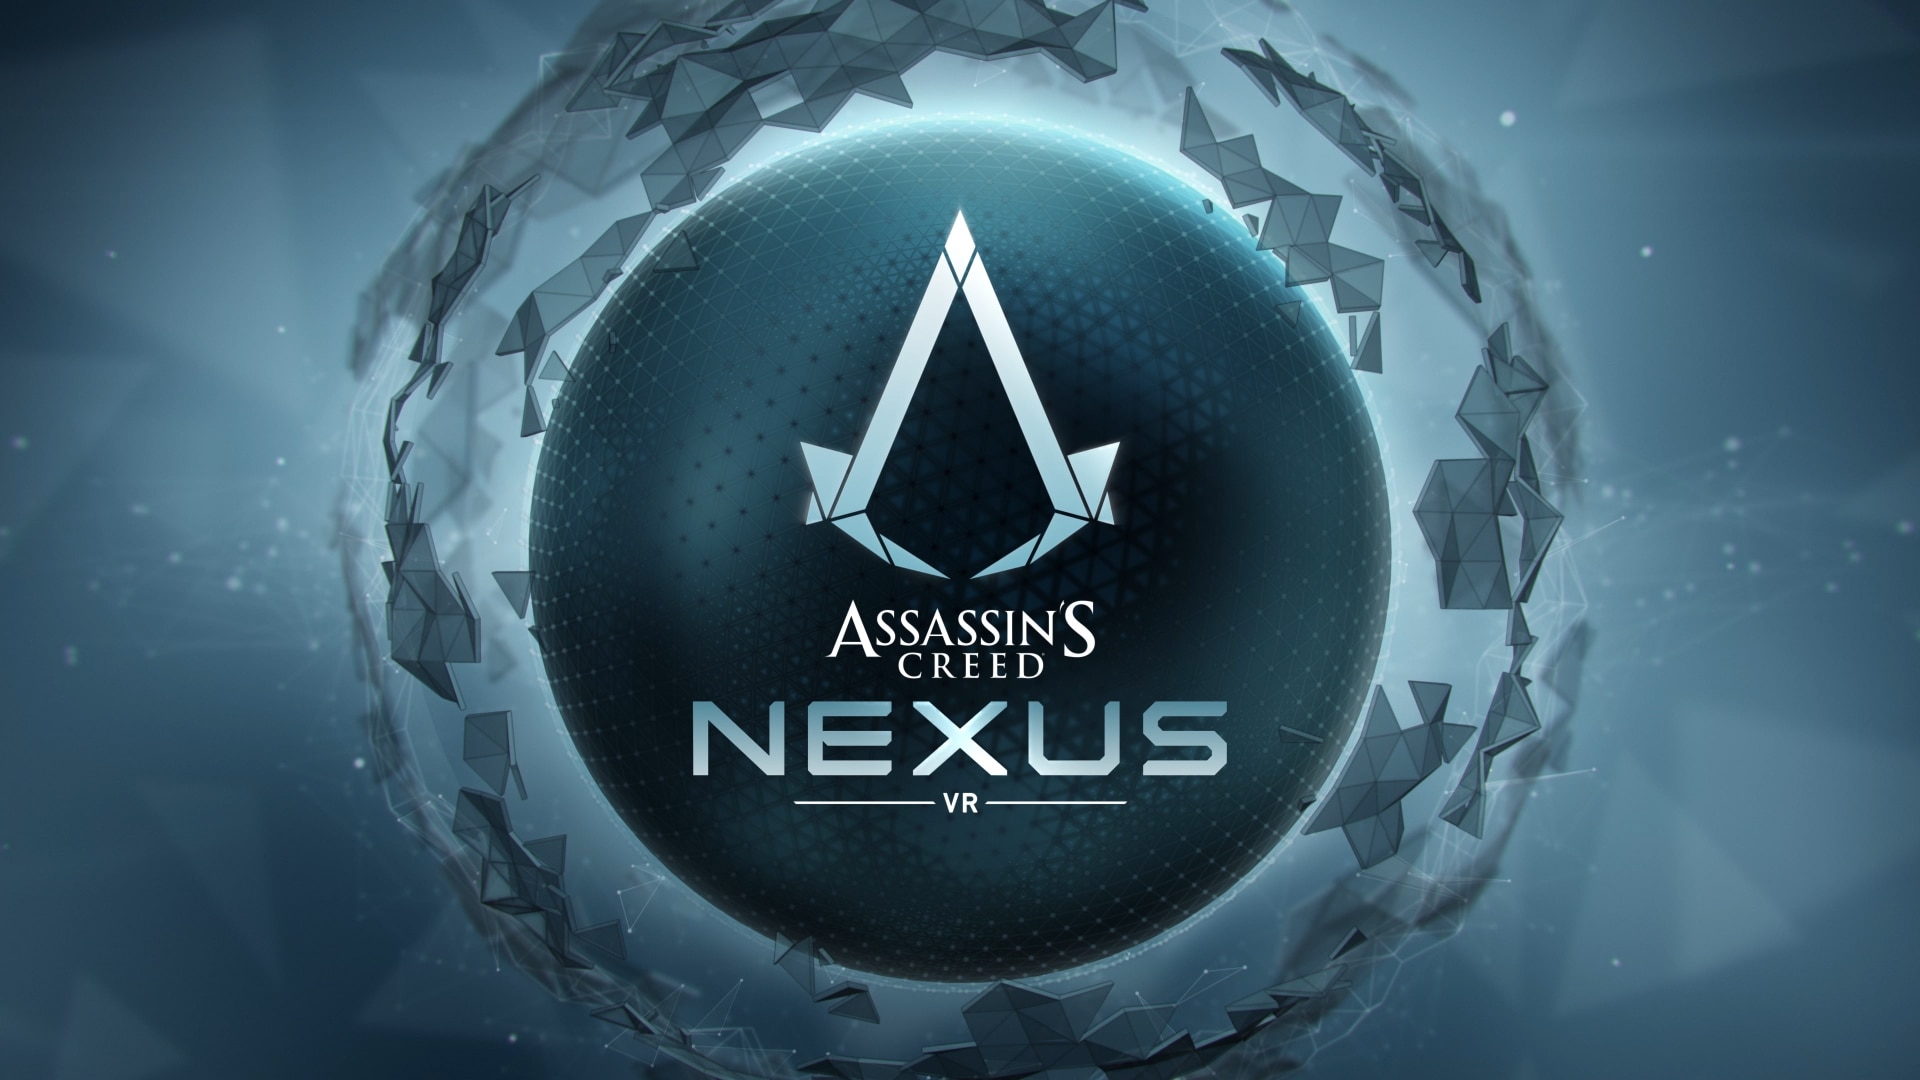 เปิดเผยภาพสกรีนช็อตแรกจากเกมเพลย์ Assassin’s Creed Nexus VR